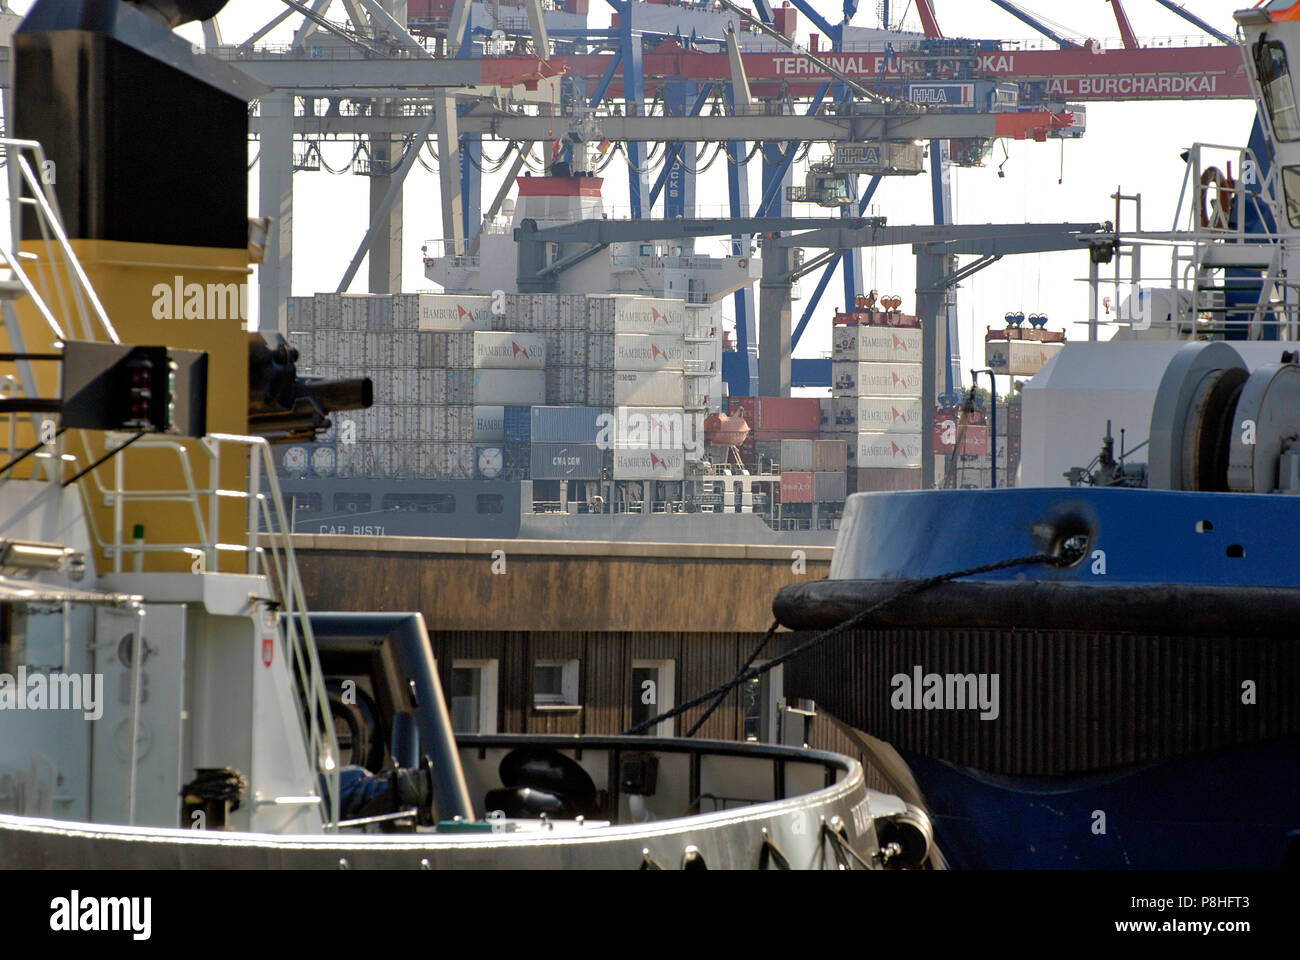 Blick auf das Container-Terminal Burchardkai im Hamburger Hafen. Contenitore der Reederei Hamburg Sued aufgestapelt warten auf dem Container-Schiff Cap Foto Stock